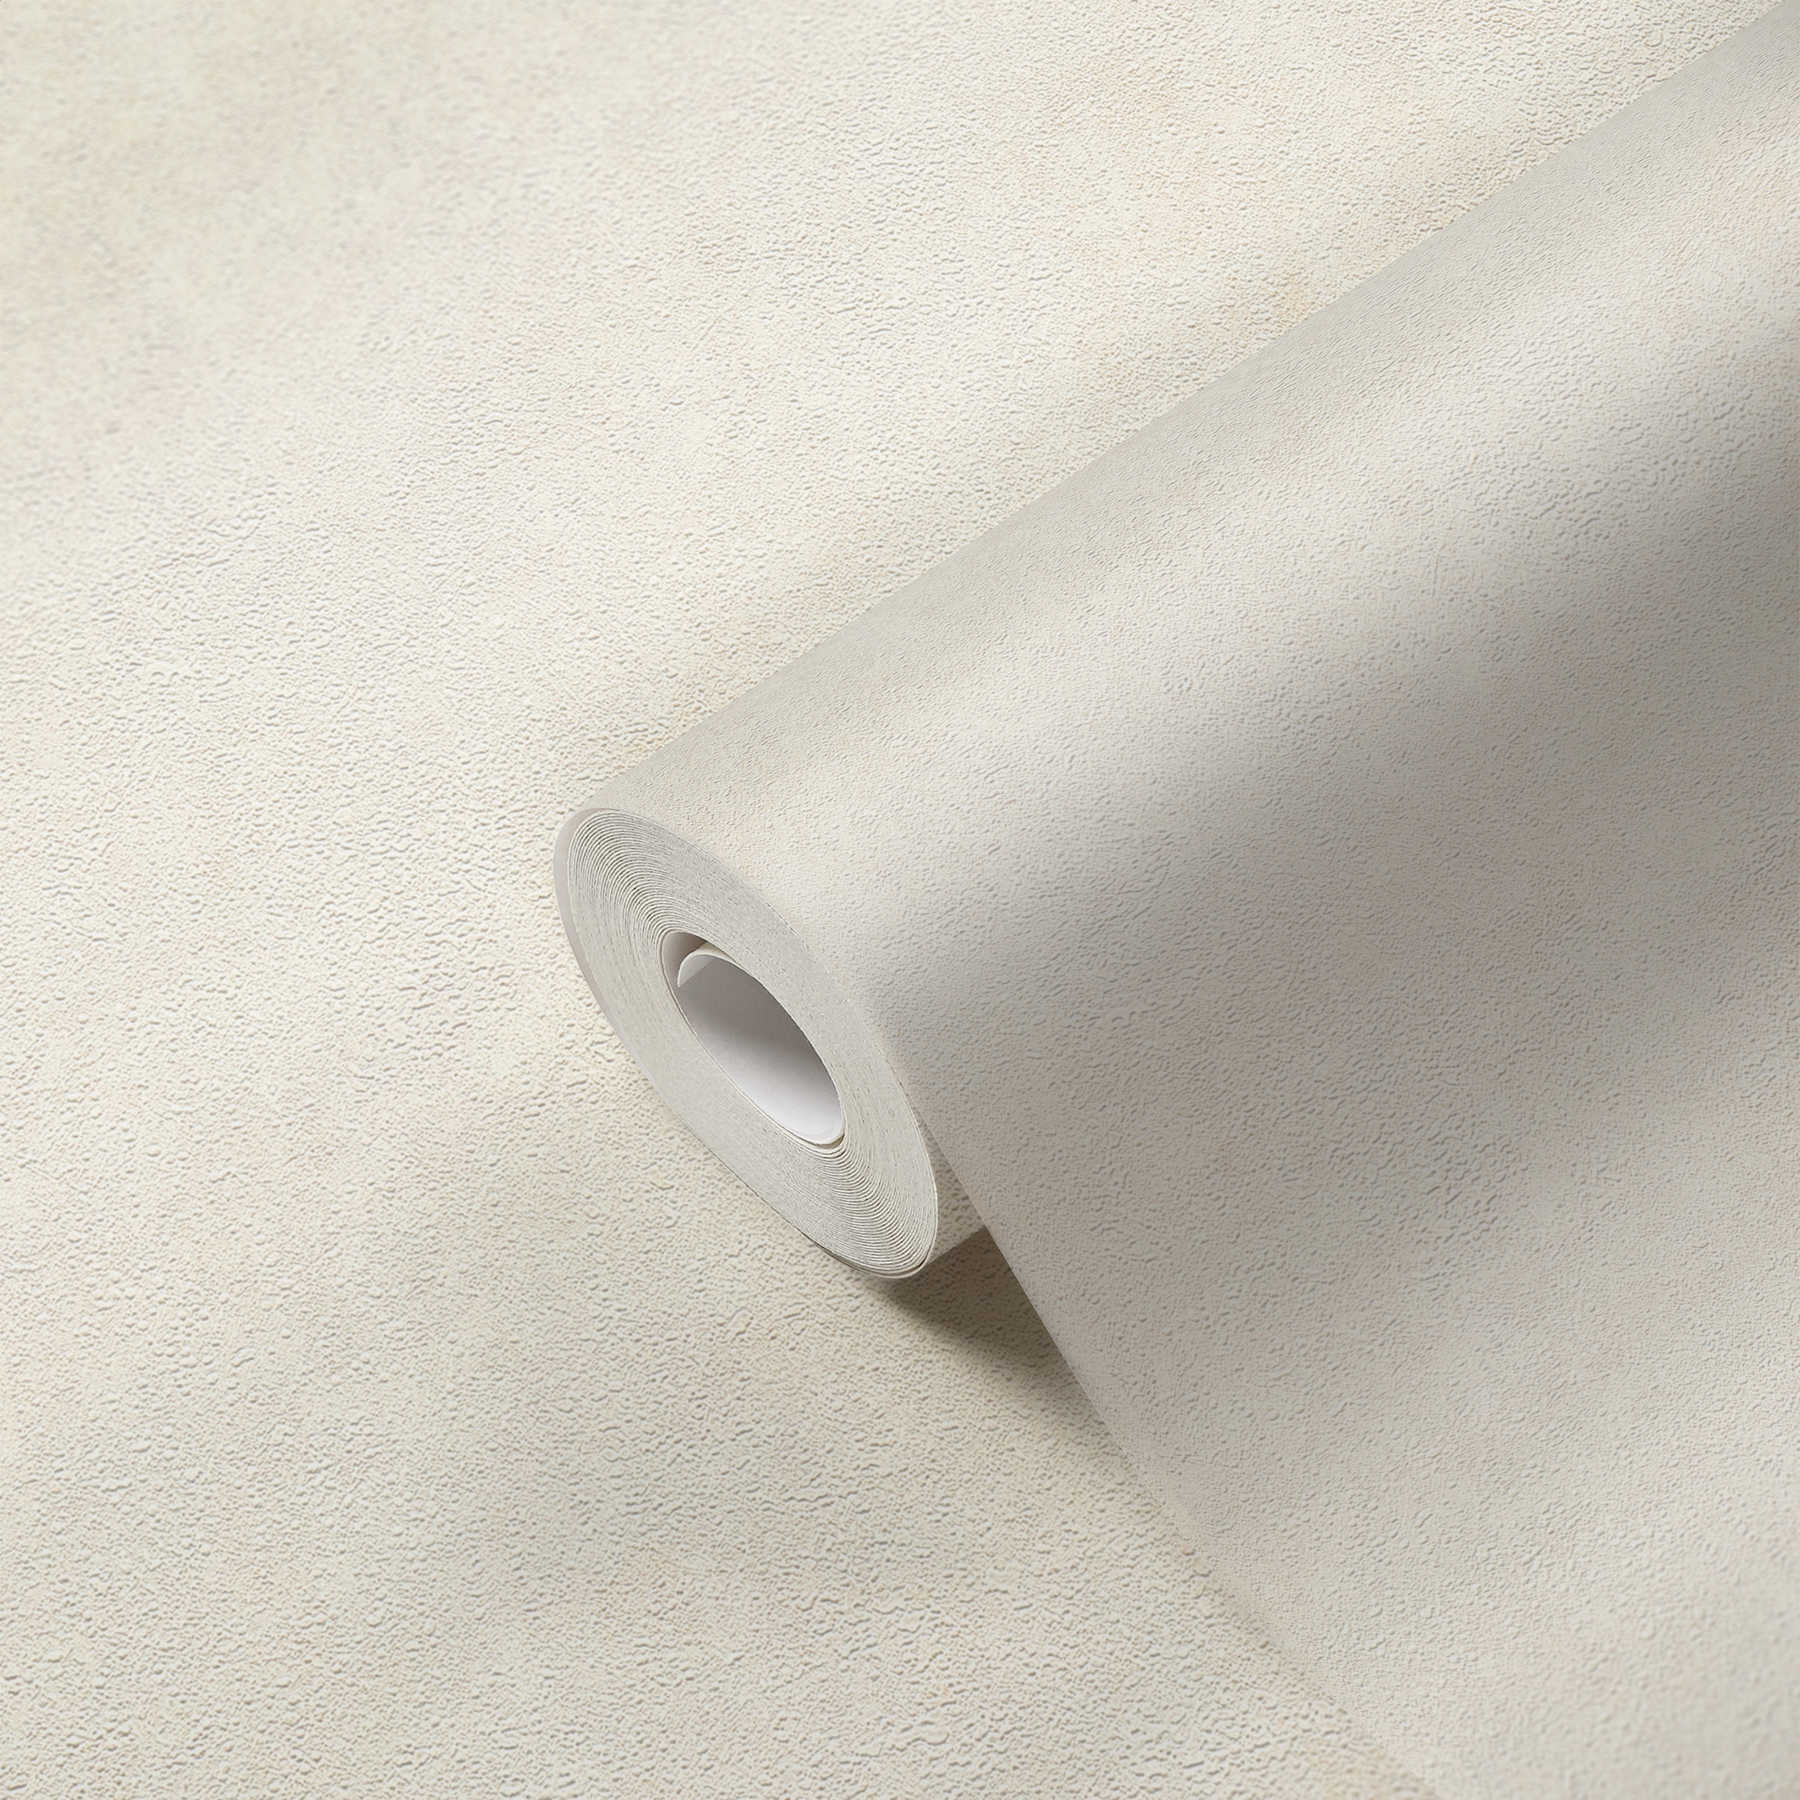             Carta da parati in tessuto non tessuto con leggeri accenti luccicanti - crema, bianco
        